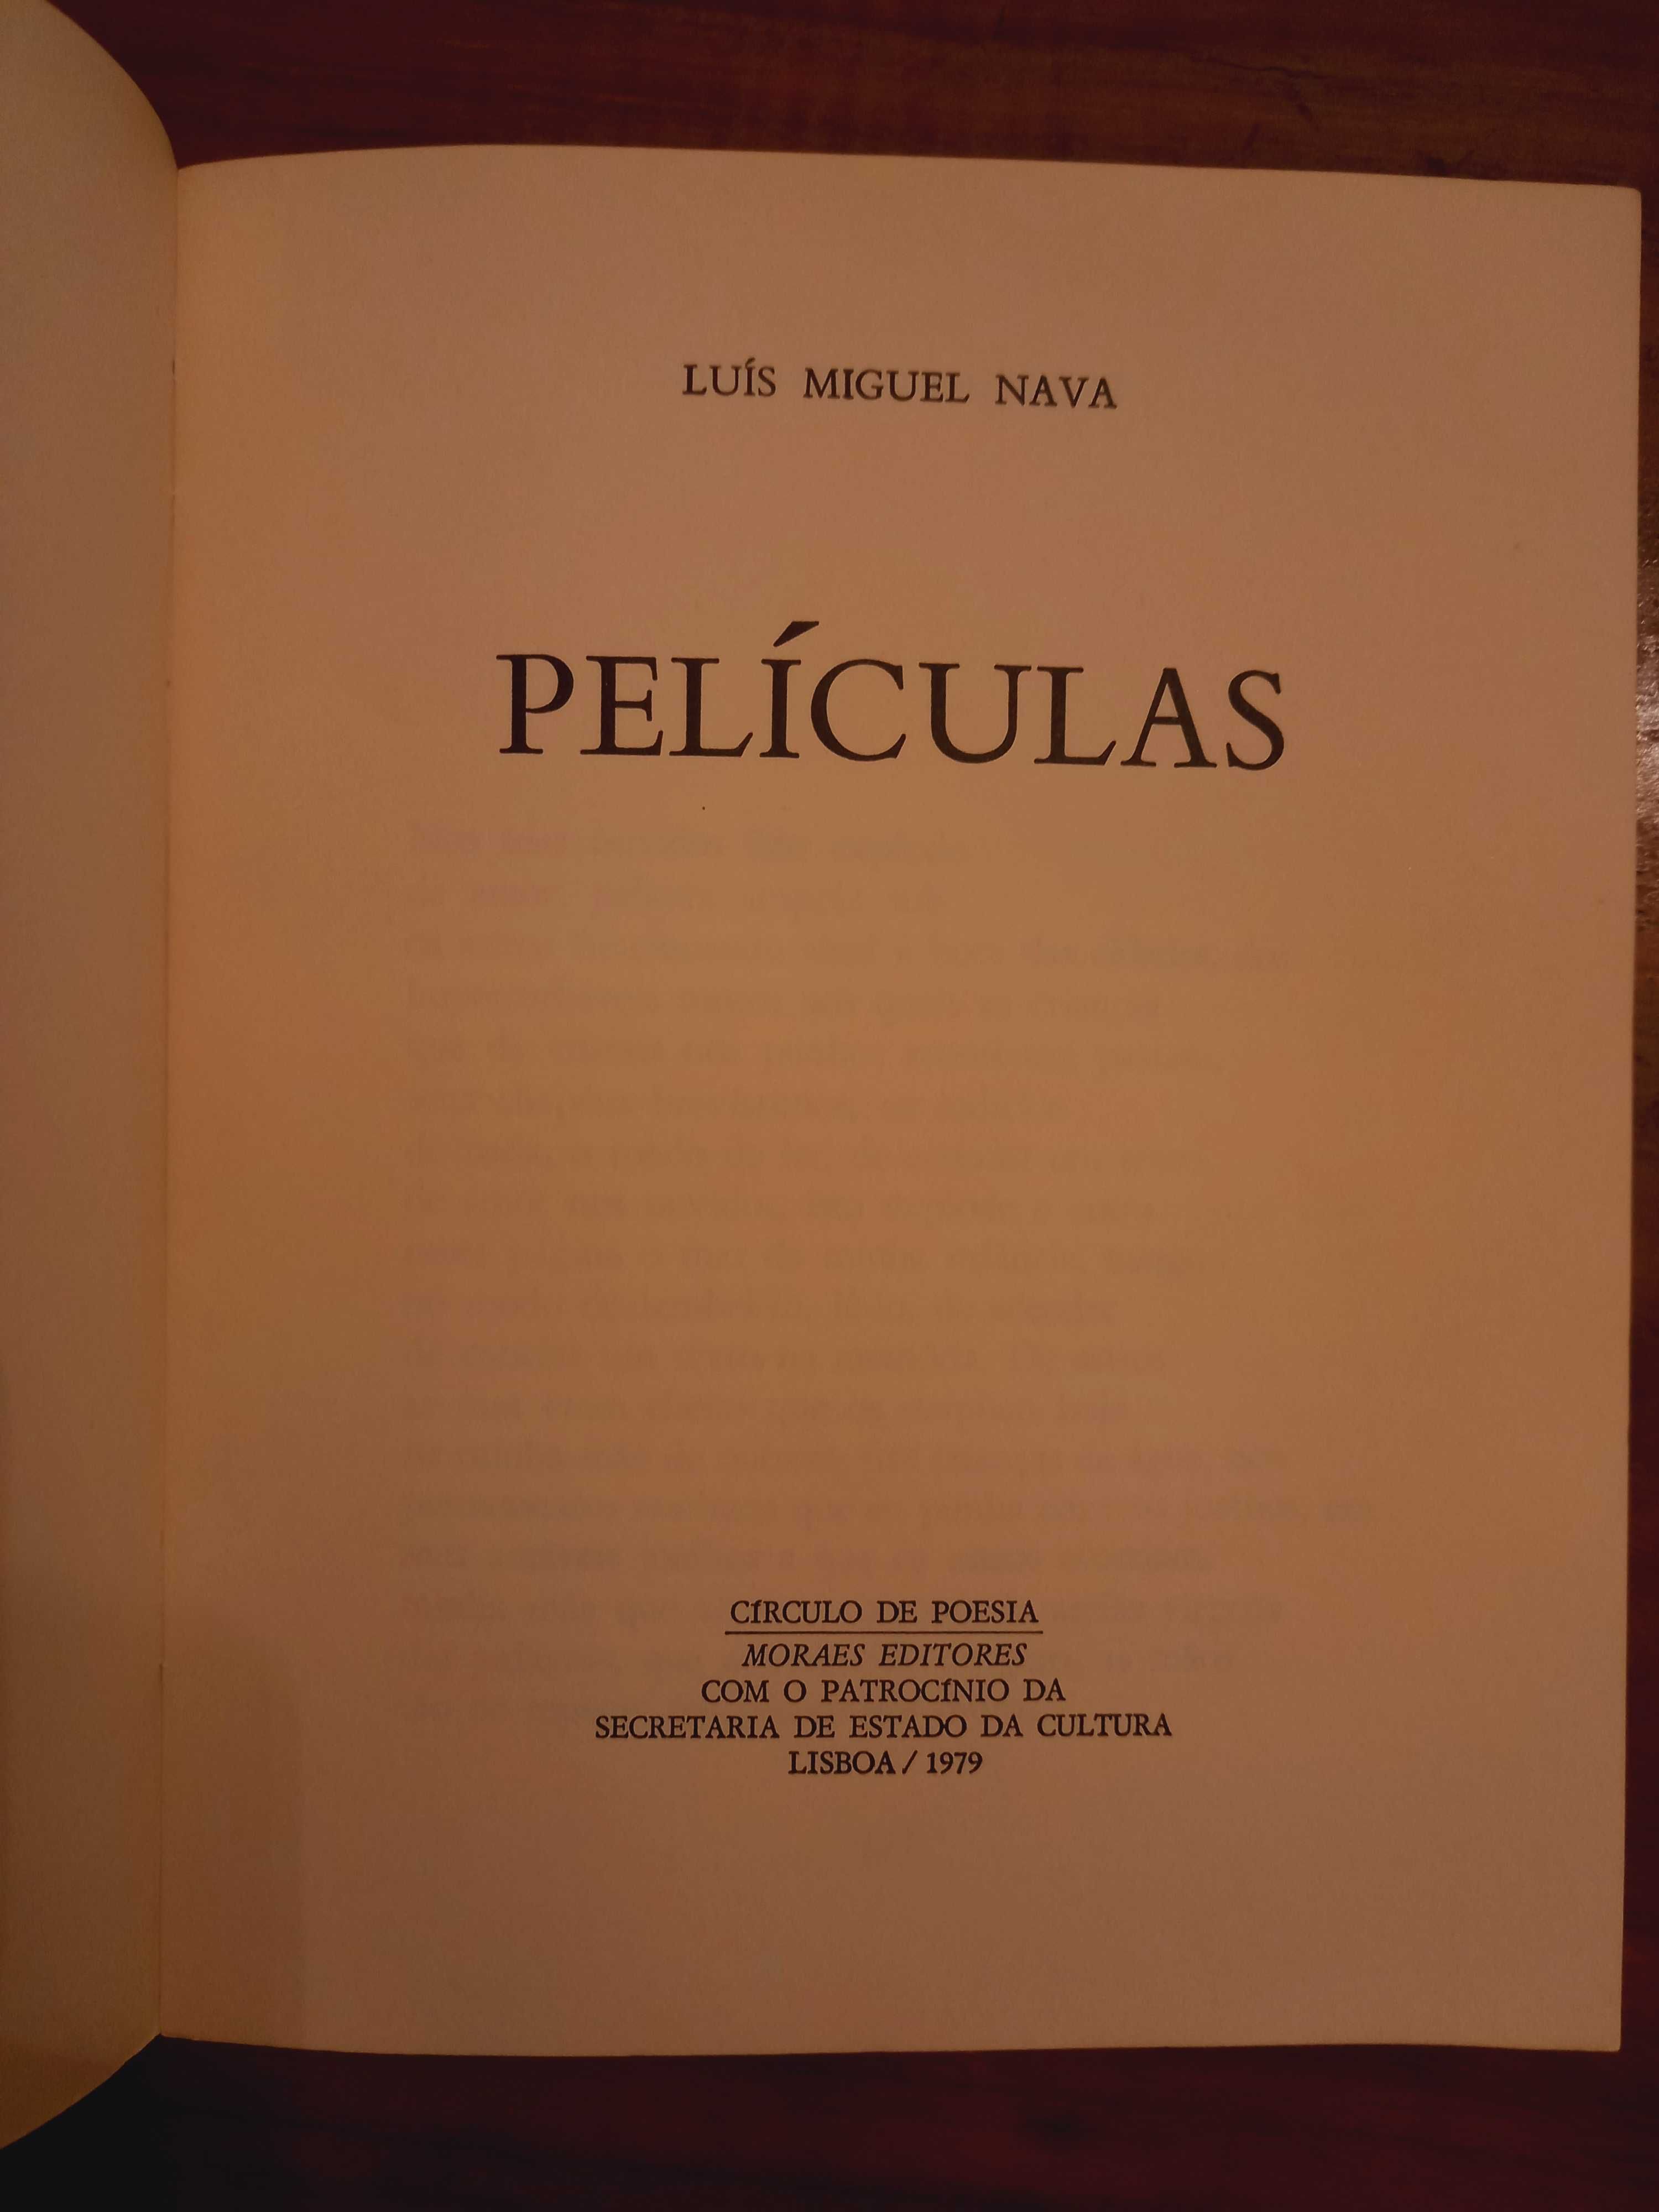 "Películas", Luís Miguel Nava